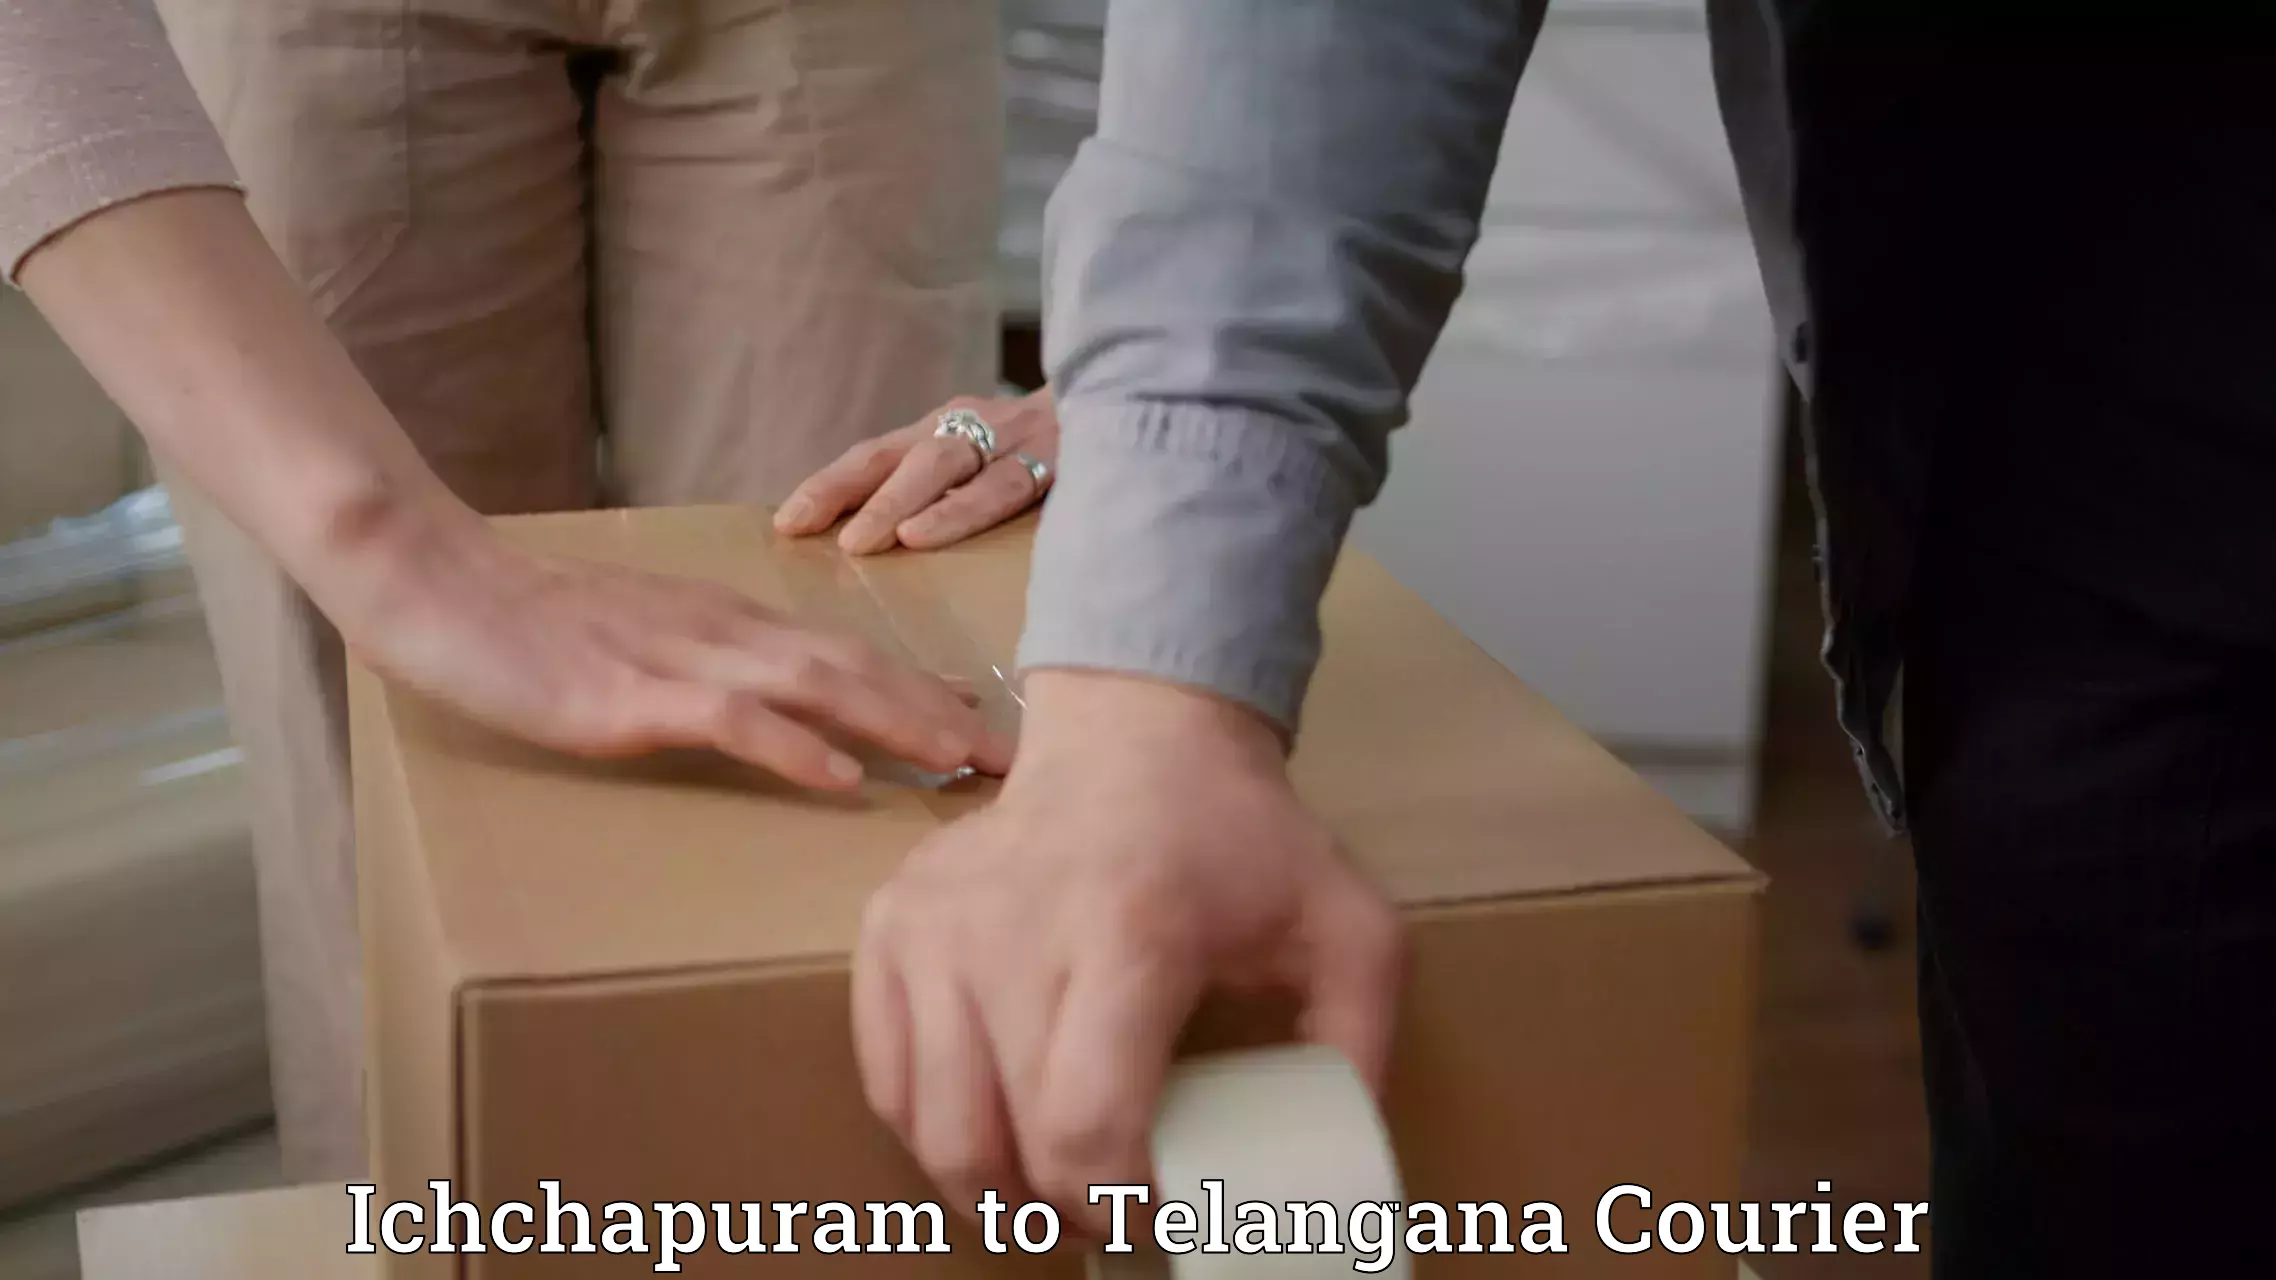 Efficient order fulfillment Ichchapuram to Cheyyur